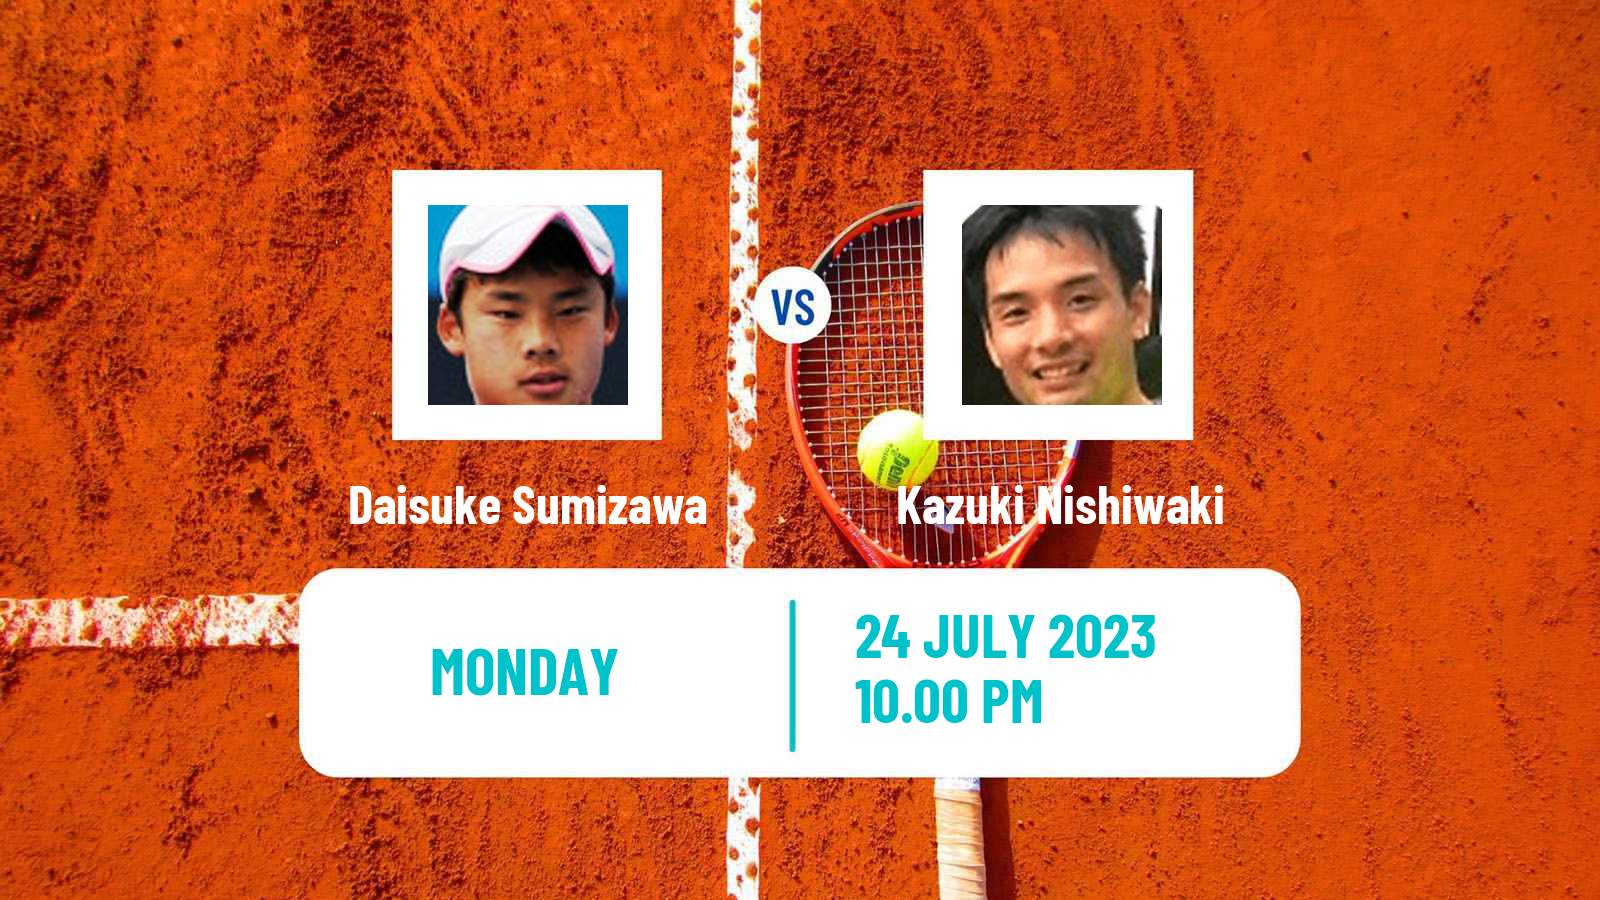 Tennis ITF M15 Caloundra Men Daisuke Sumizawa - Kazuki Nishiwaki